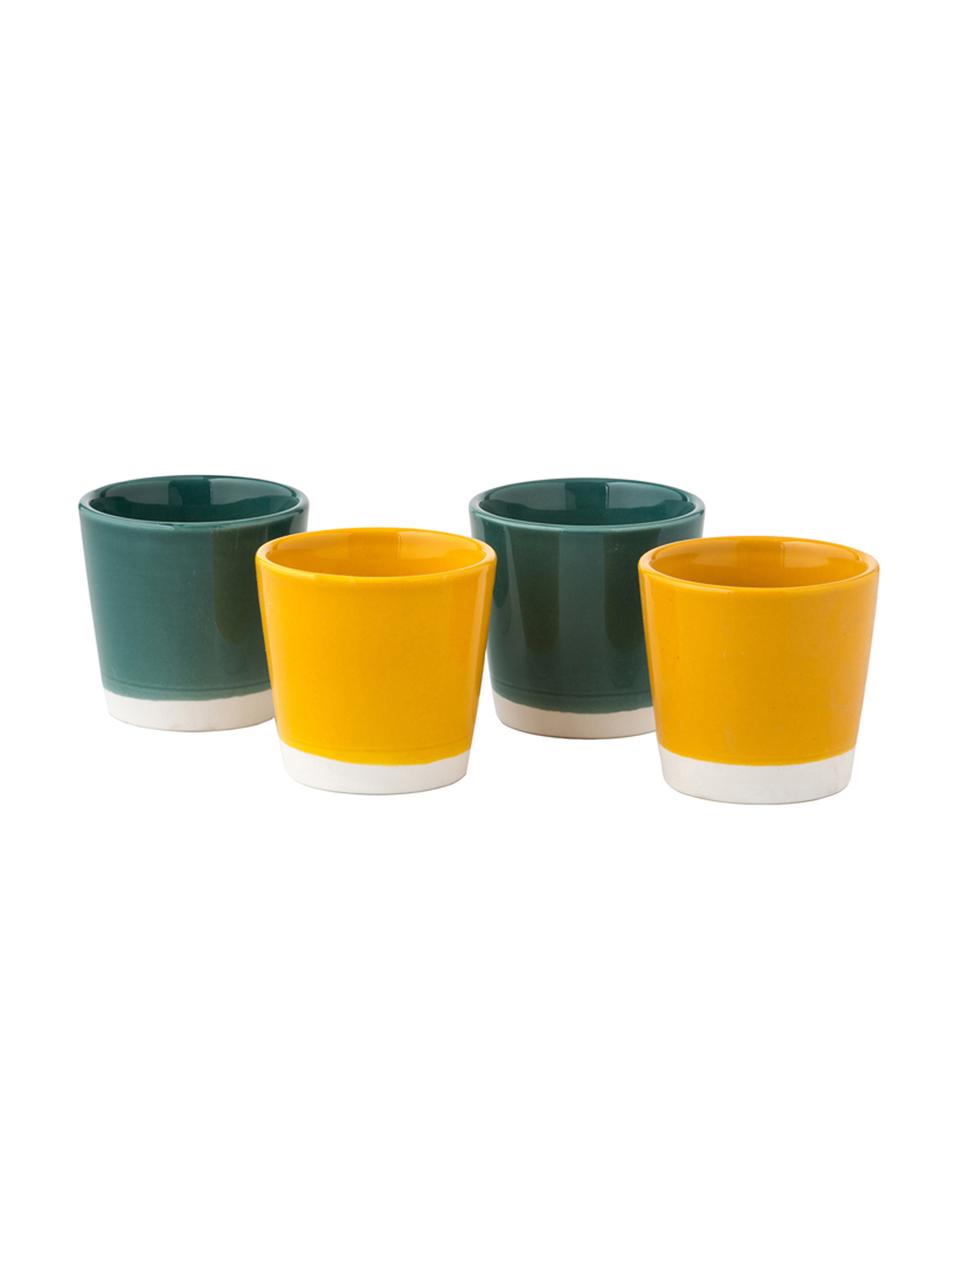 Súprava šálok na espresso Yen, 4 diely, Hrnček 1 a 2: biela, zelená Hrnček 3 a 4: biela, žltá